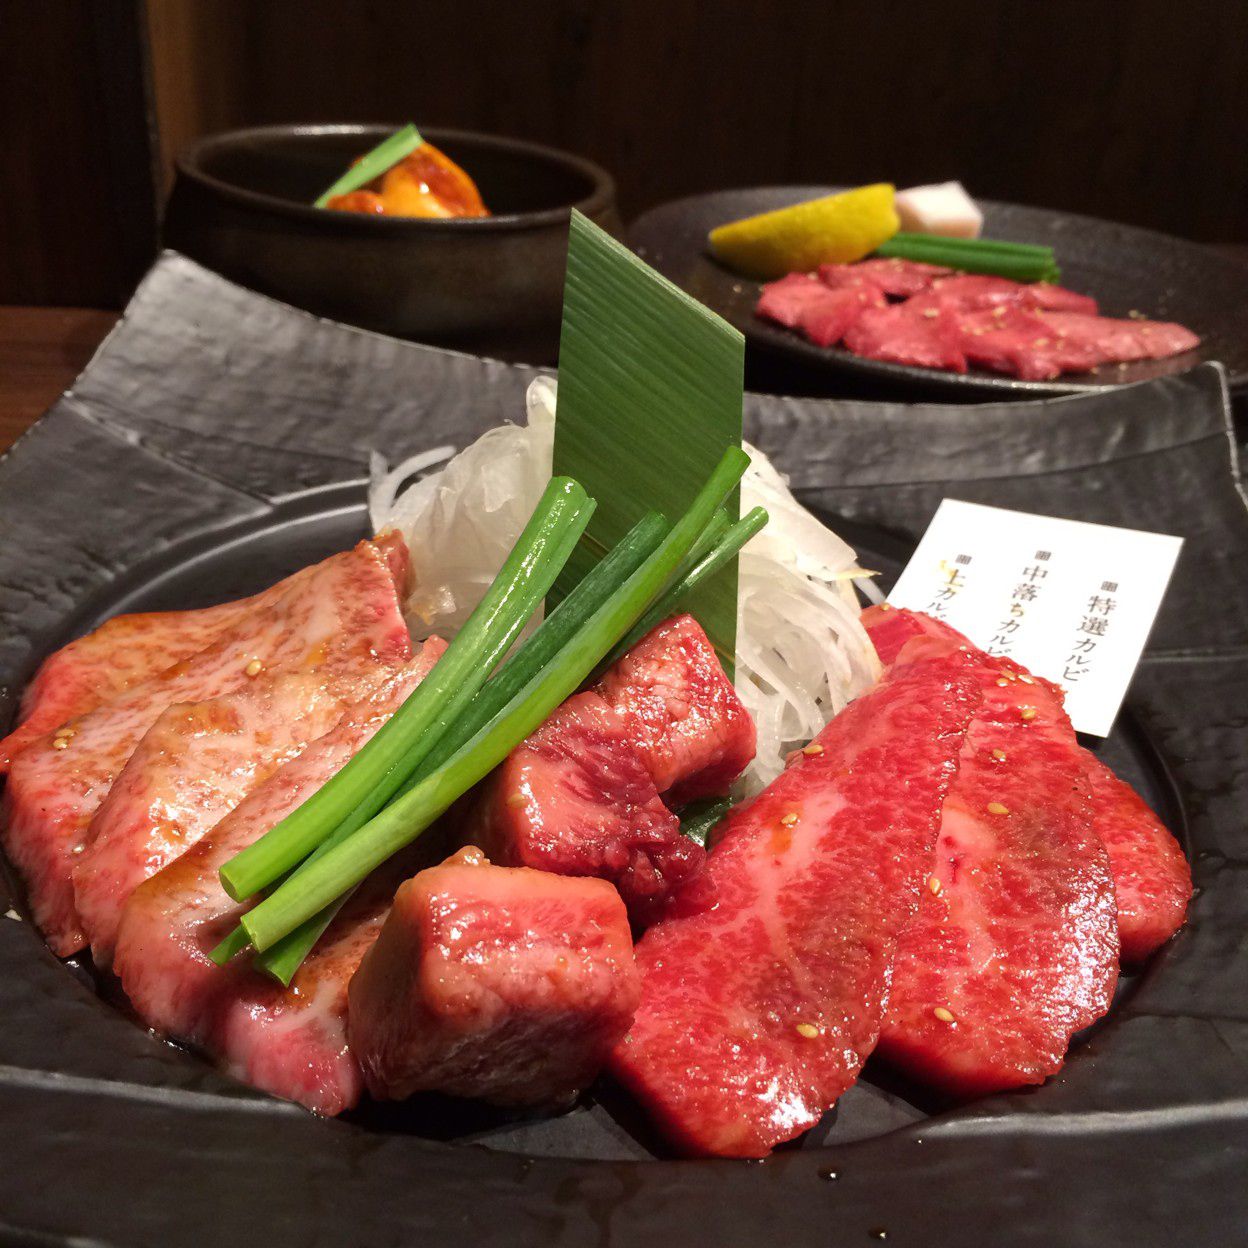 今日はがっつりお肉を食べよう 静岡市内のおすすめ人気焼肉店10選 Retrip リトリップ